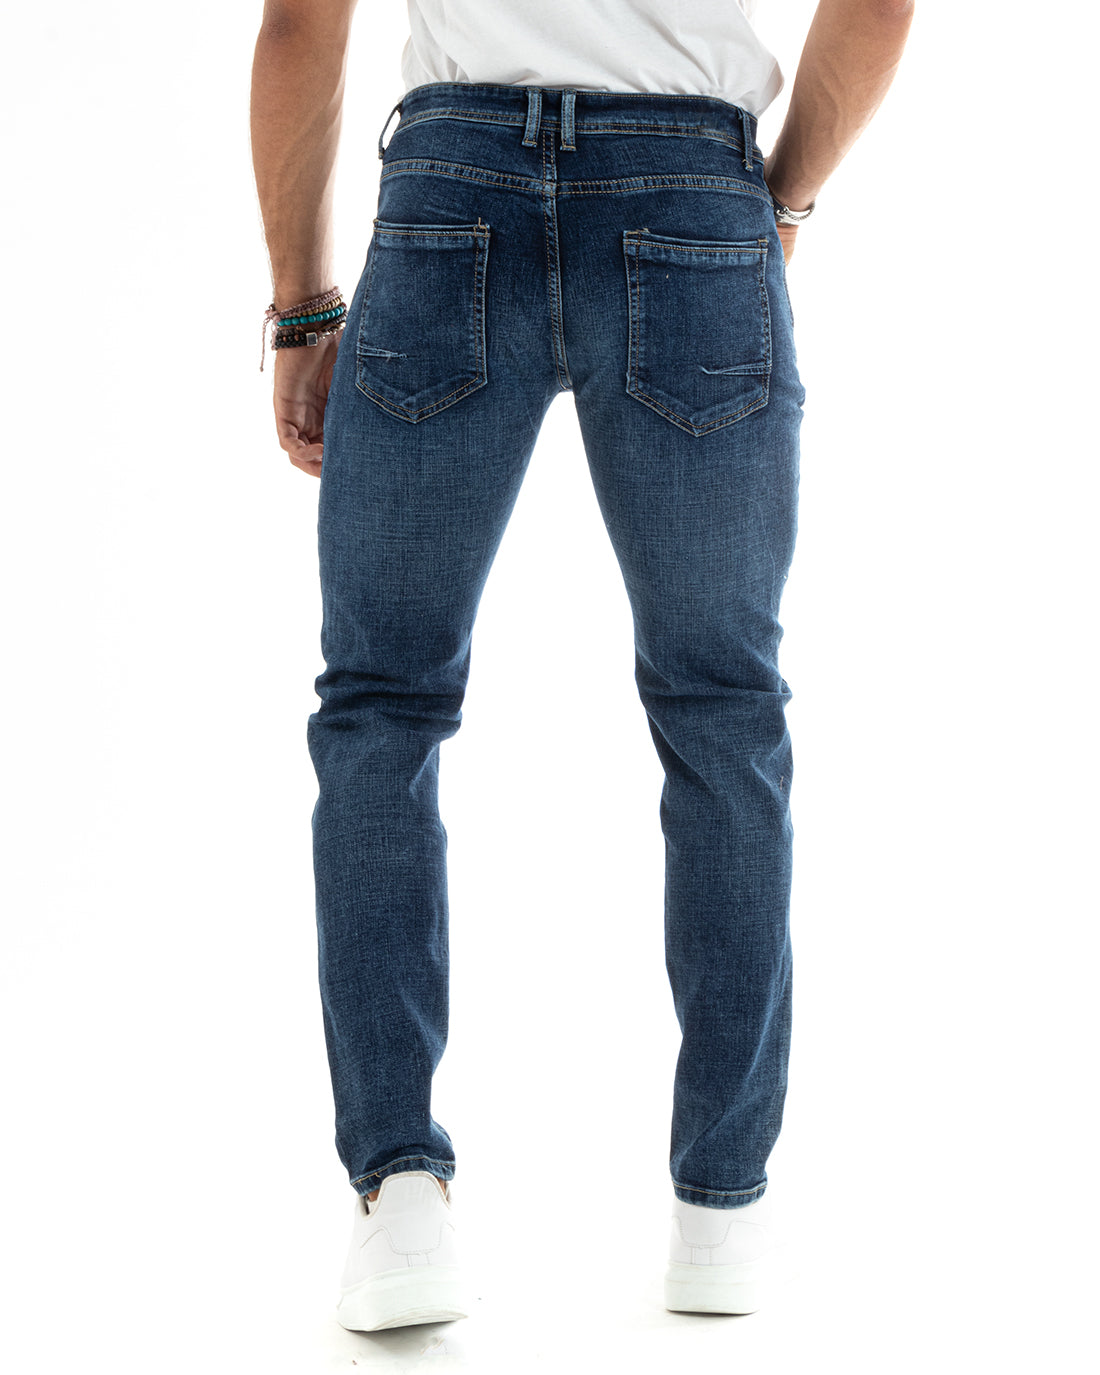 Pantaloni Uomo Jeans Cinque Tasche Slim Fit Capri Blu Denim Stone Washed GIOSAL-P5968A